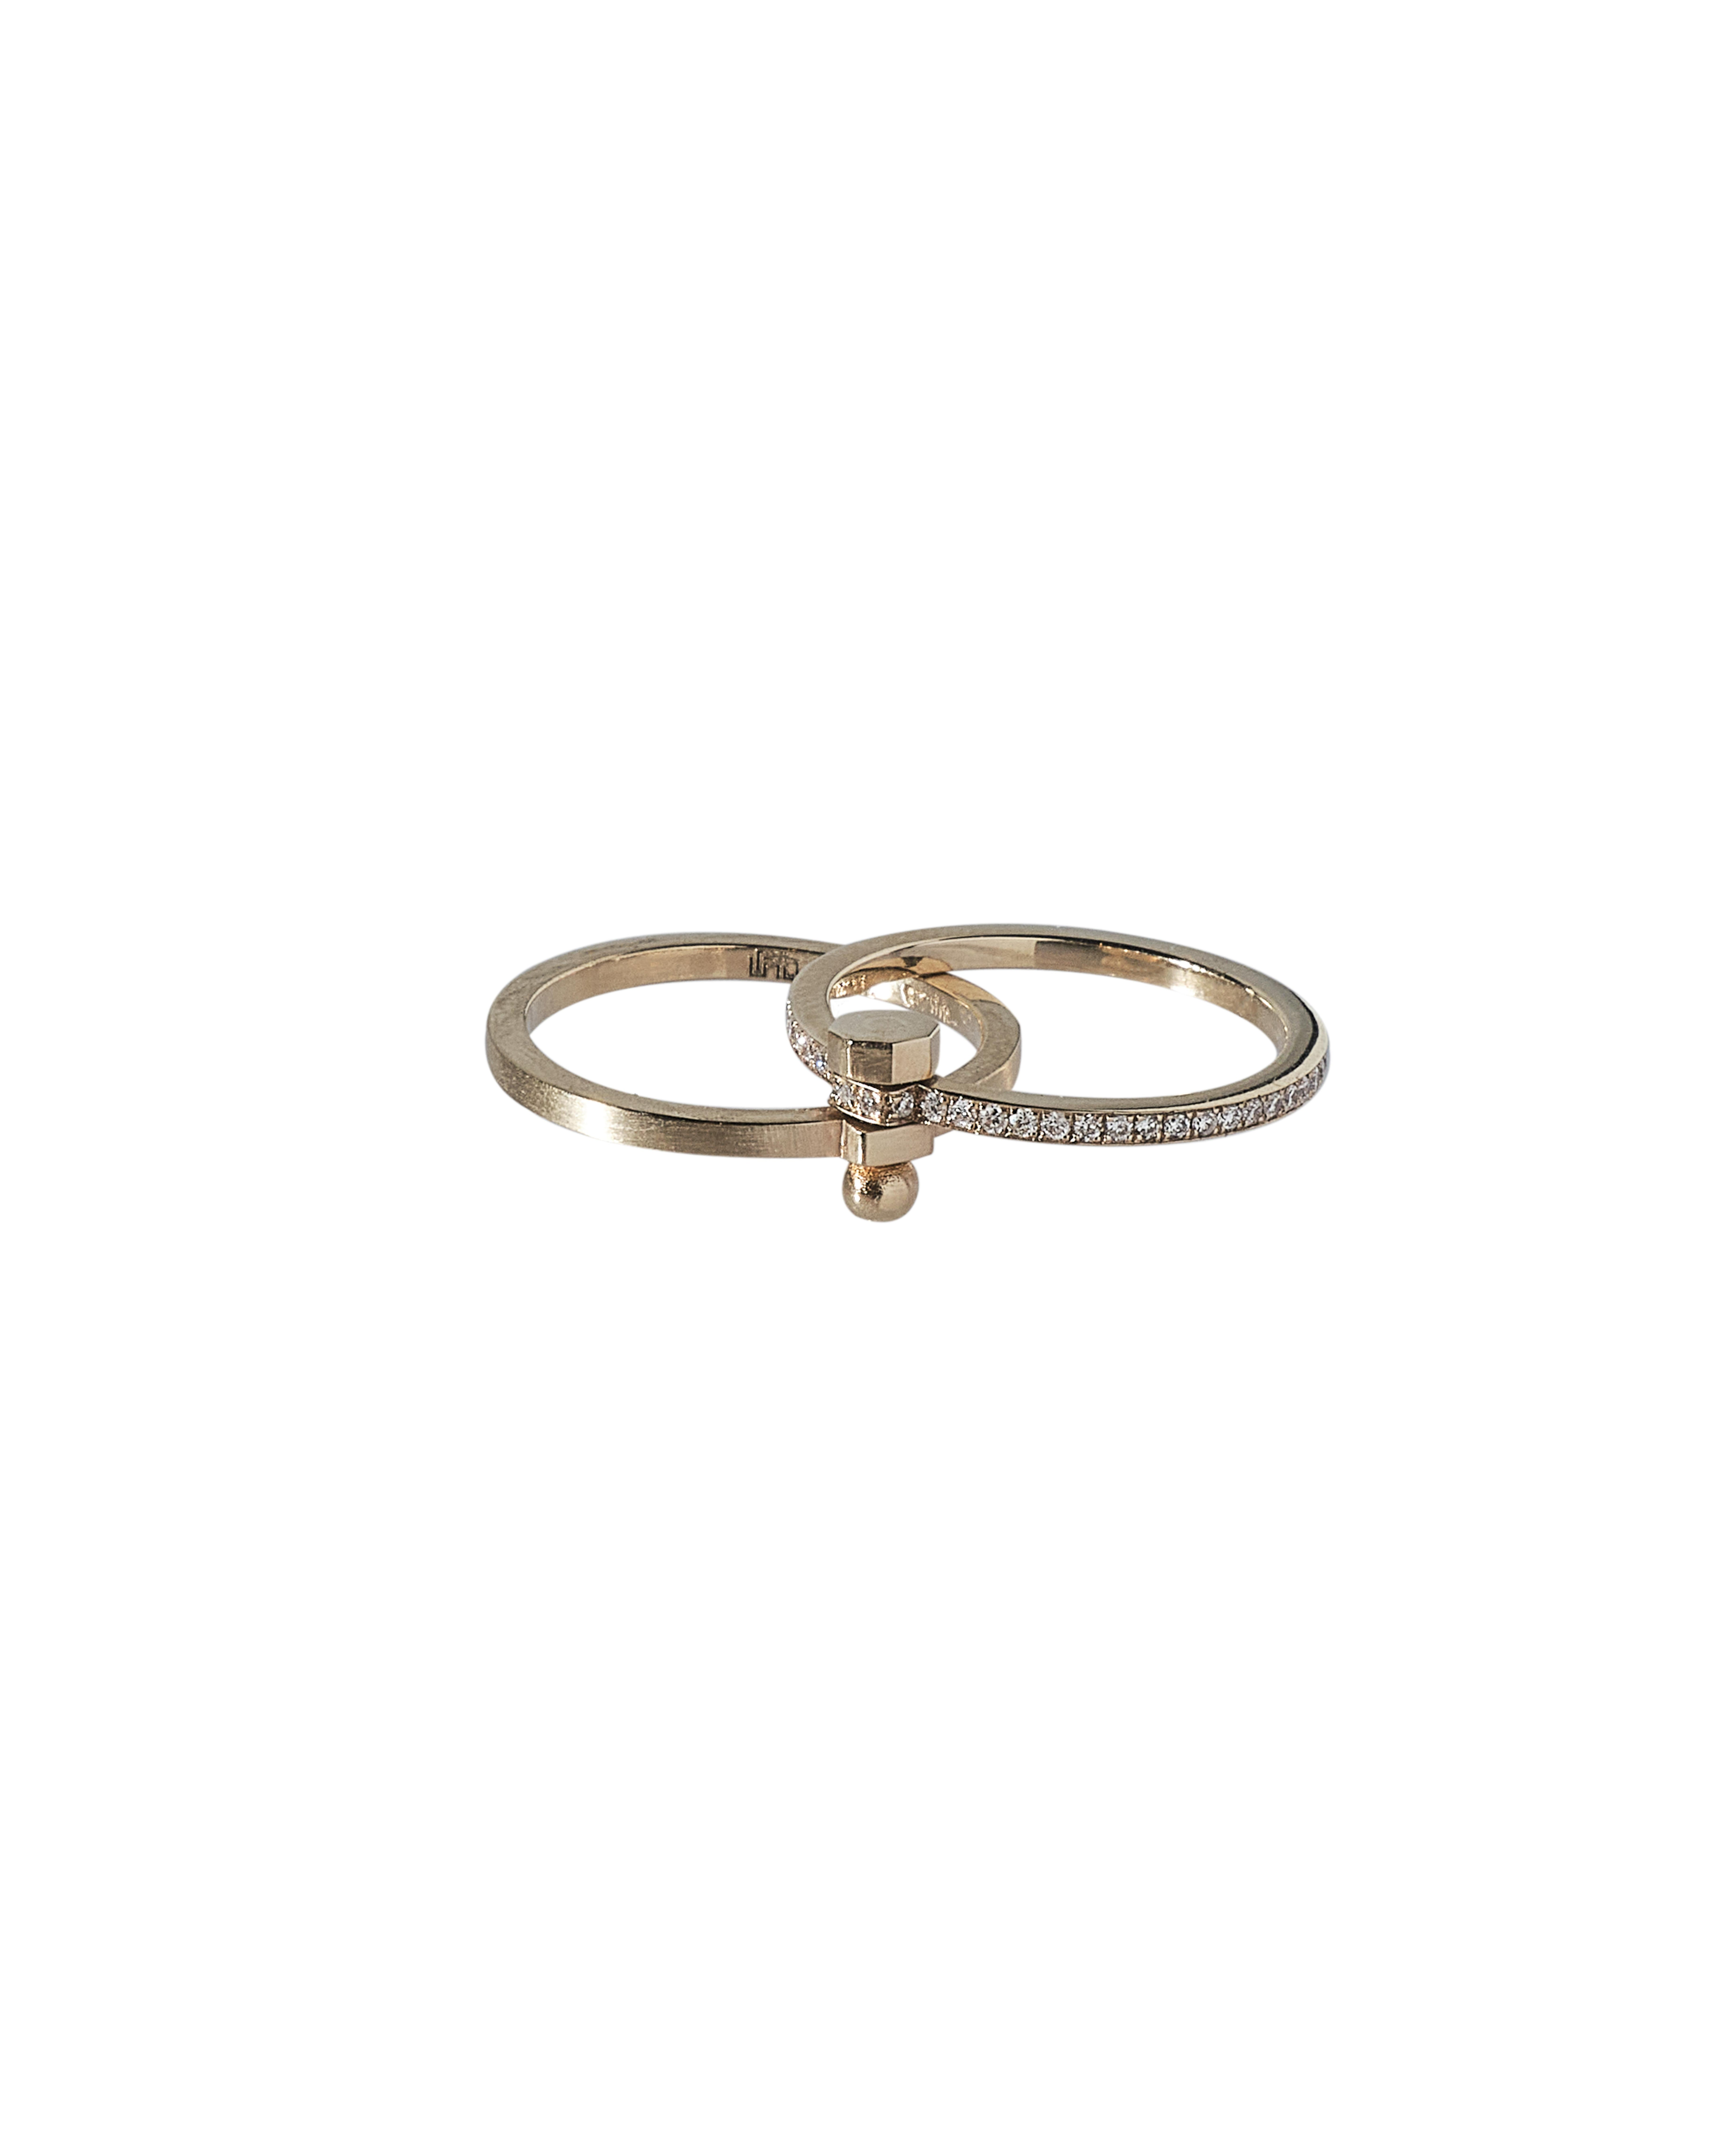 Dieser Ring aus der Kollektion SYNDESIS von POLINA ELLIS besteht aus zwei mit einer Schraube verbundenen Bändern. Eine davon ist einfarbig und die andere ist vollflächig.
Handgefertigt aus 18 Karat rohem Weißgold mit 0,24 Karat weißen Diamanten im